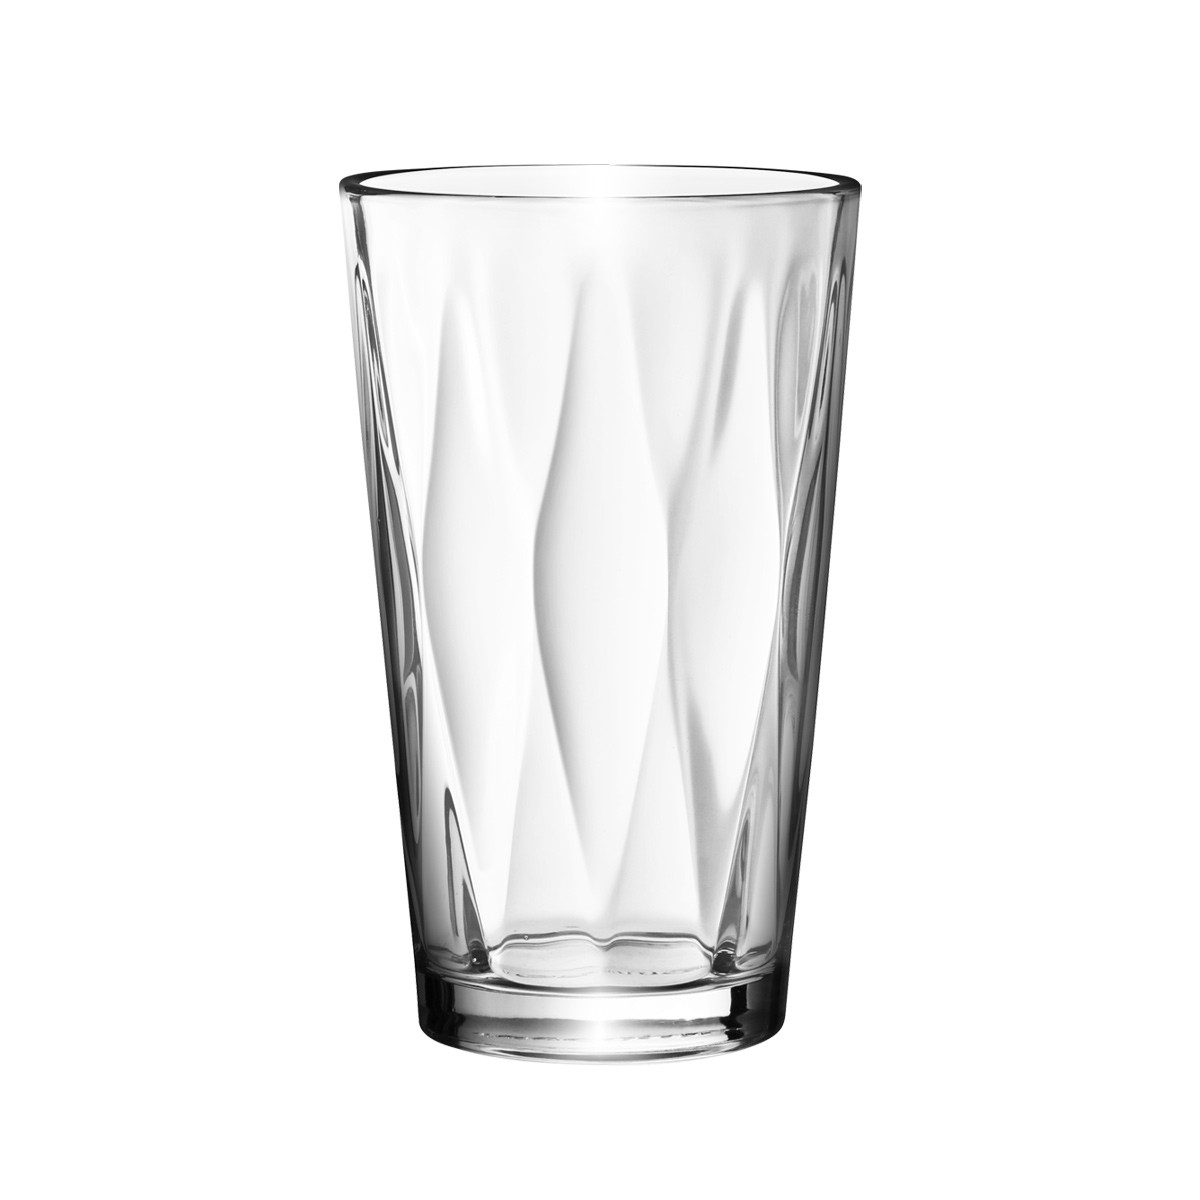 Trinkglas myDRINK Optic 350 ml